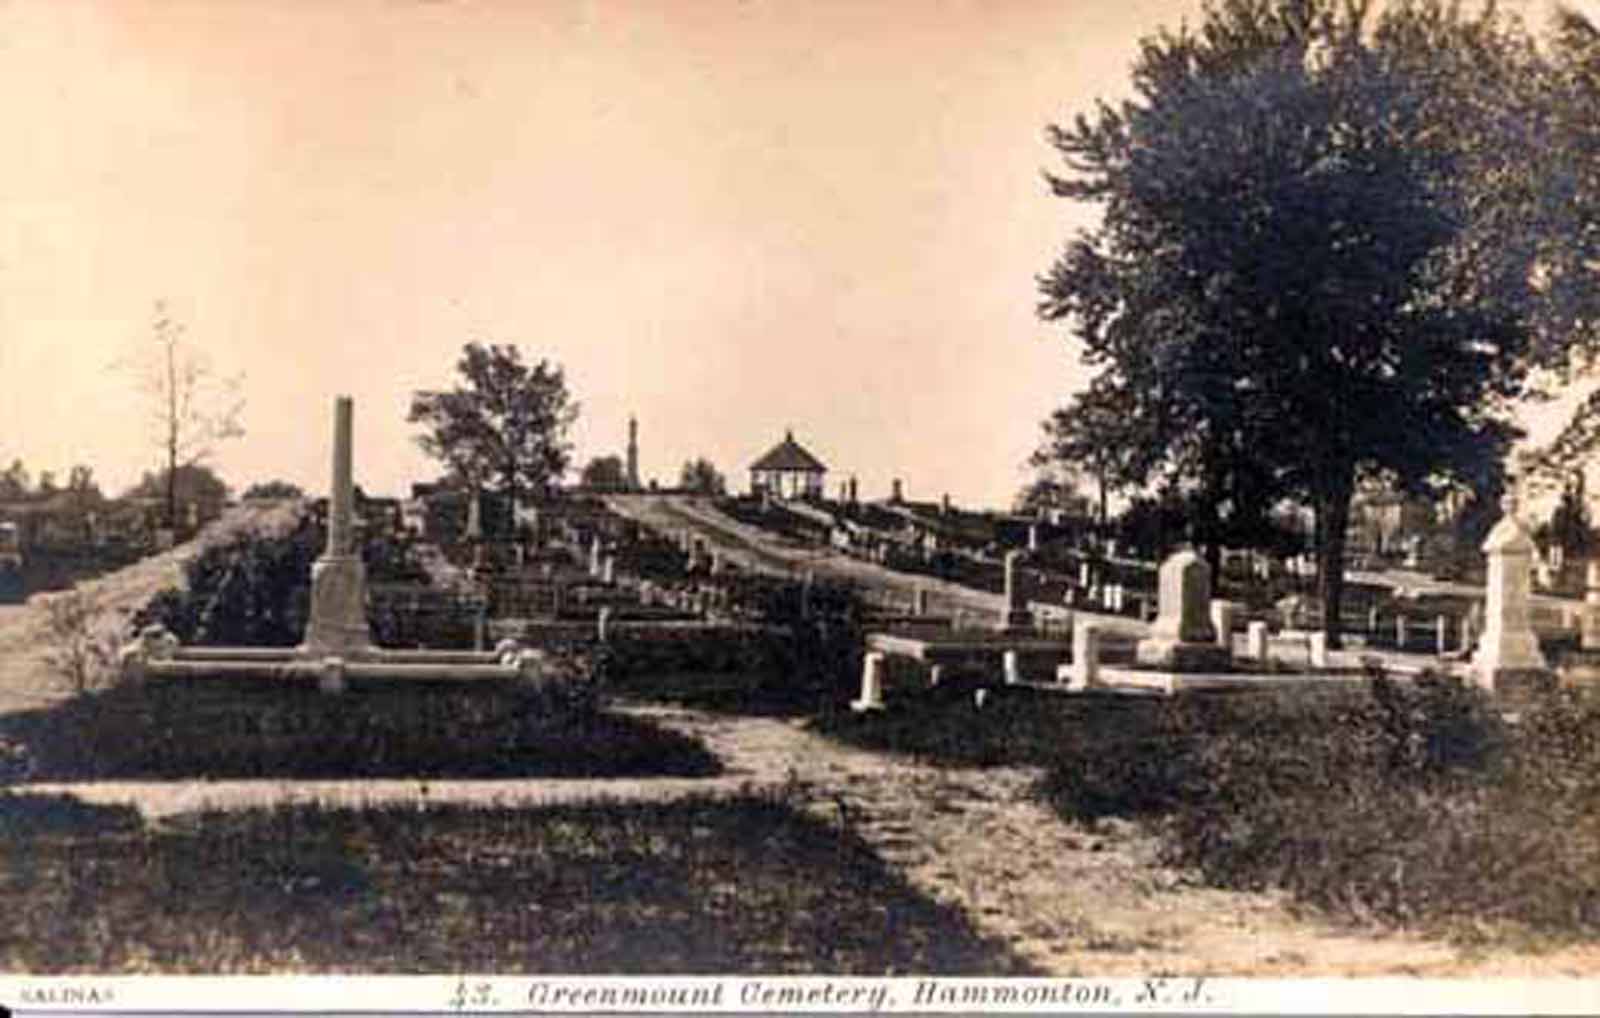 Hammonton - Green Mount Cemetery